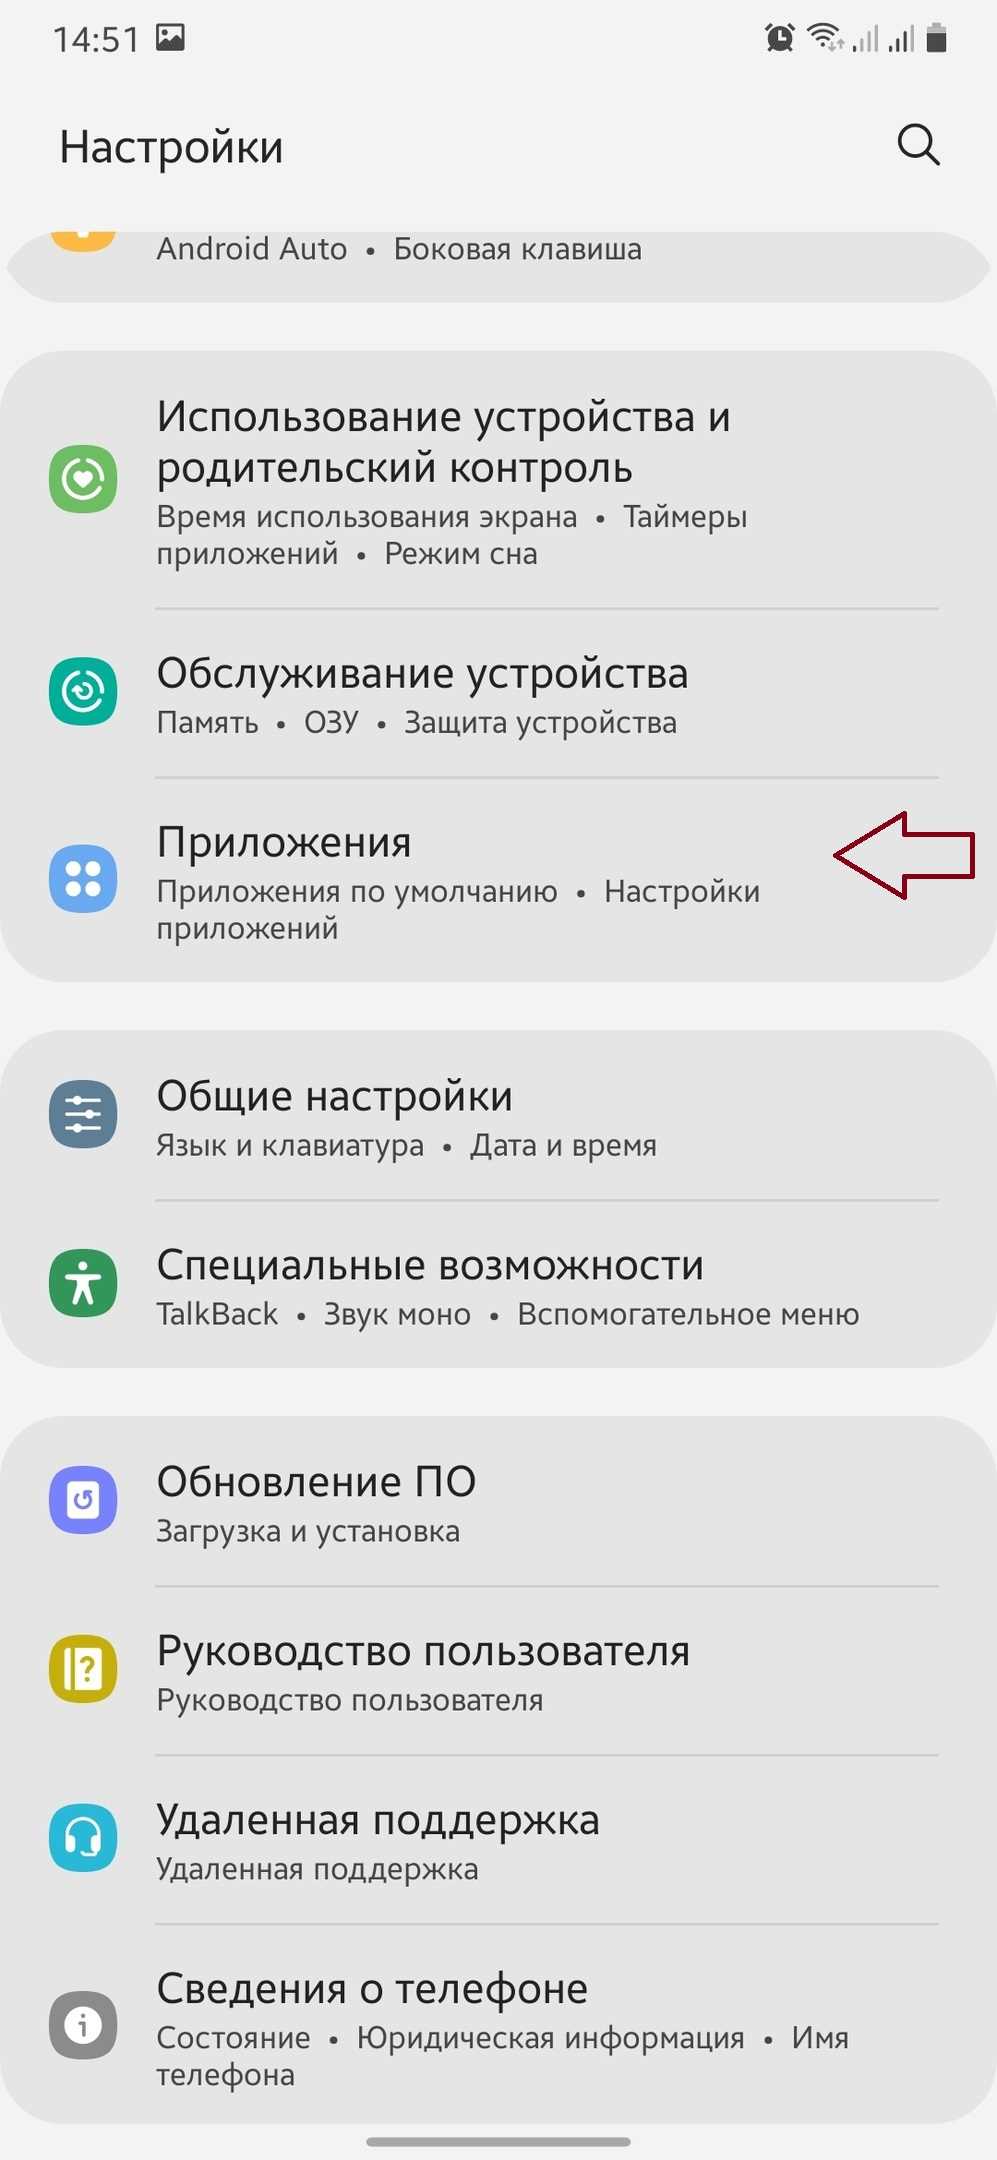 Почему не удается зайти в социальную сеть Одноклассники?